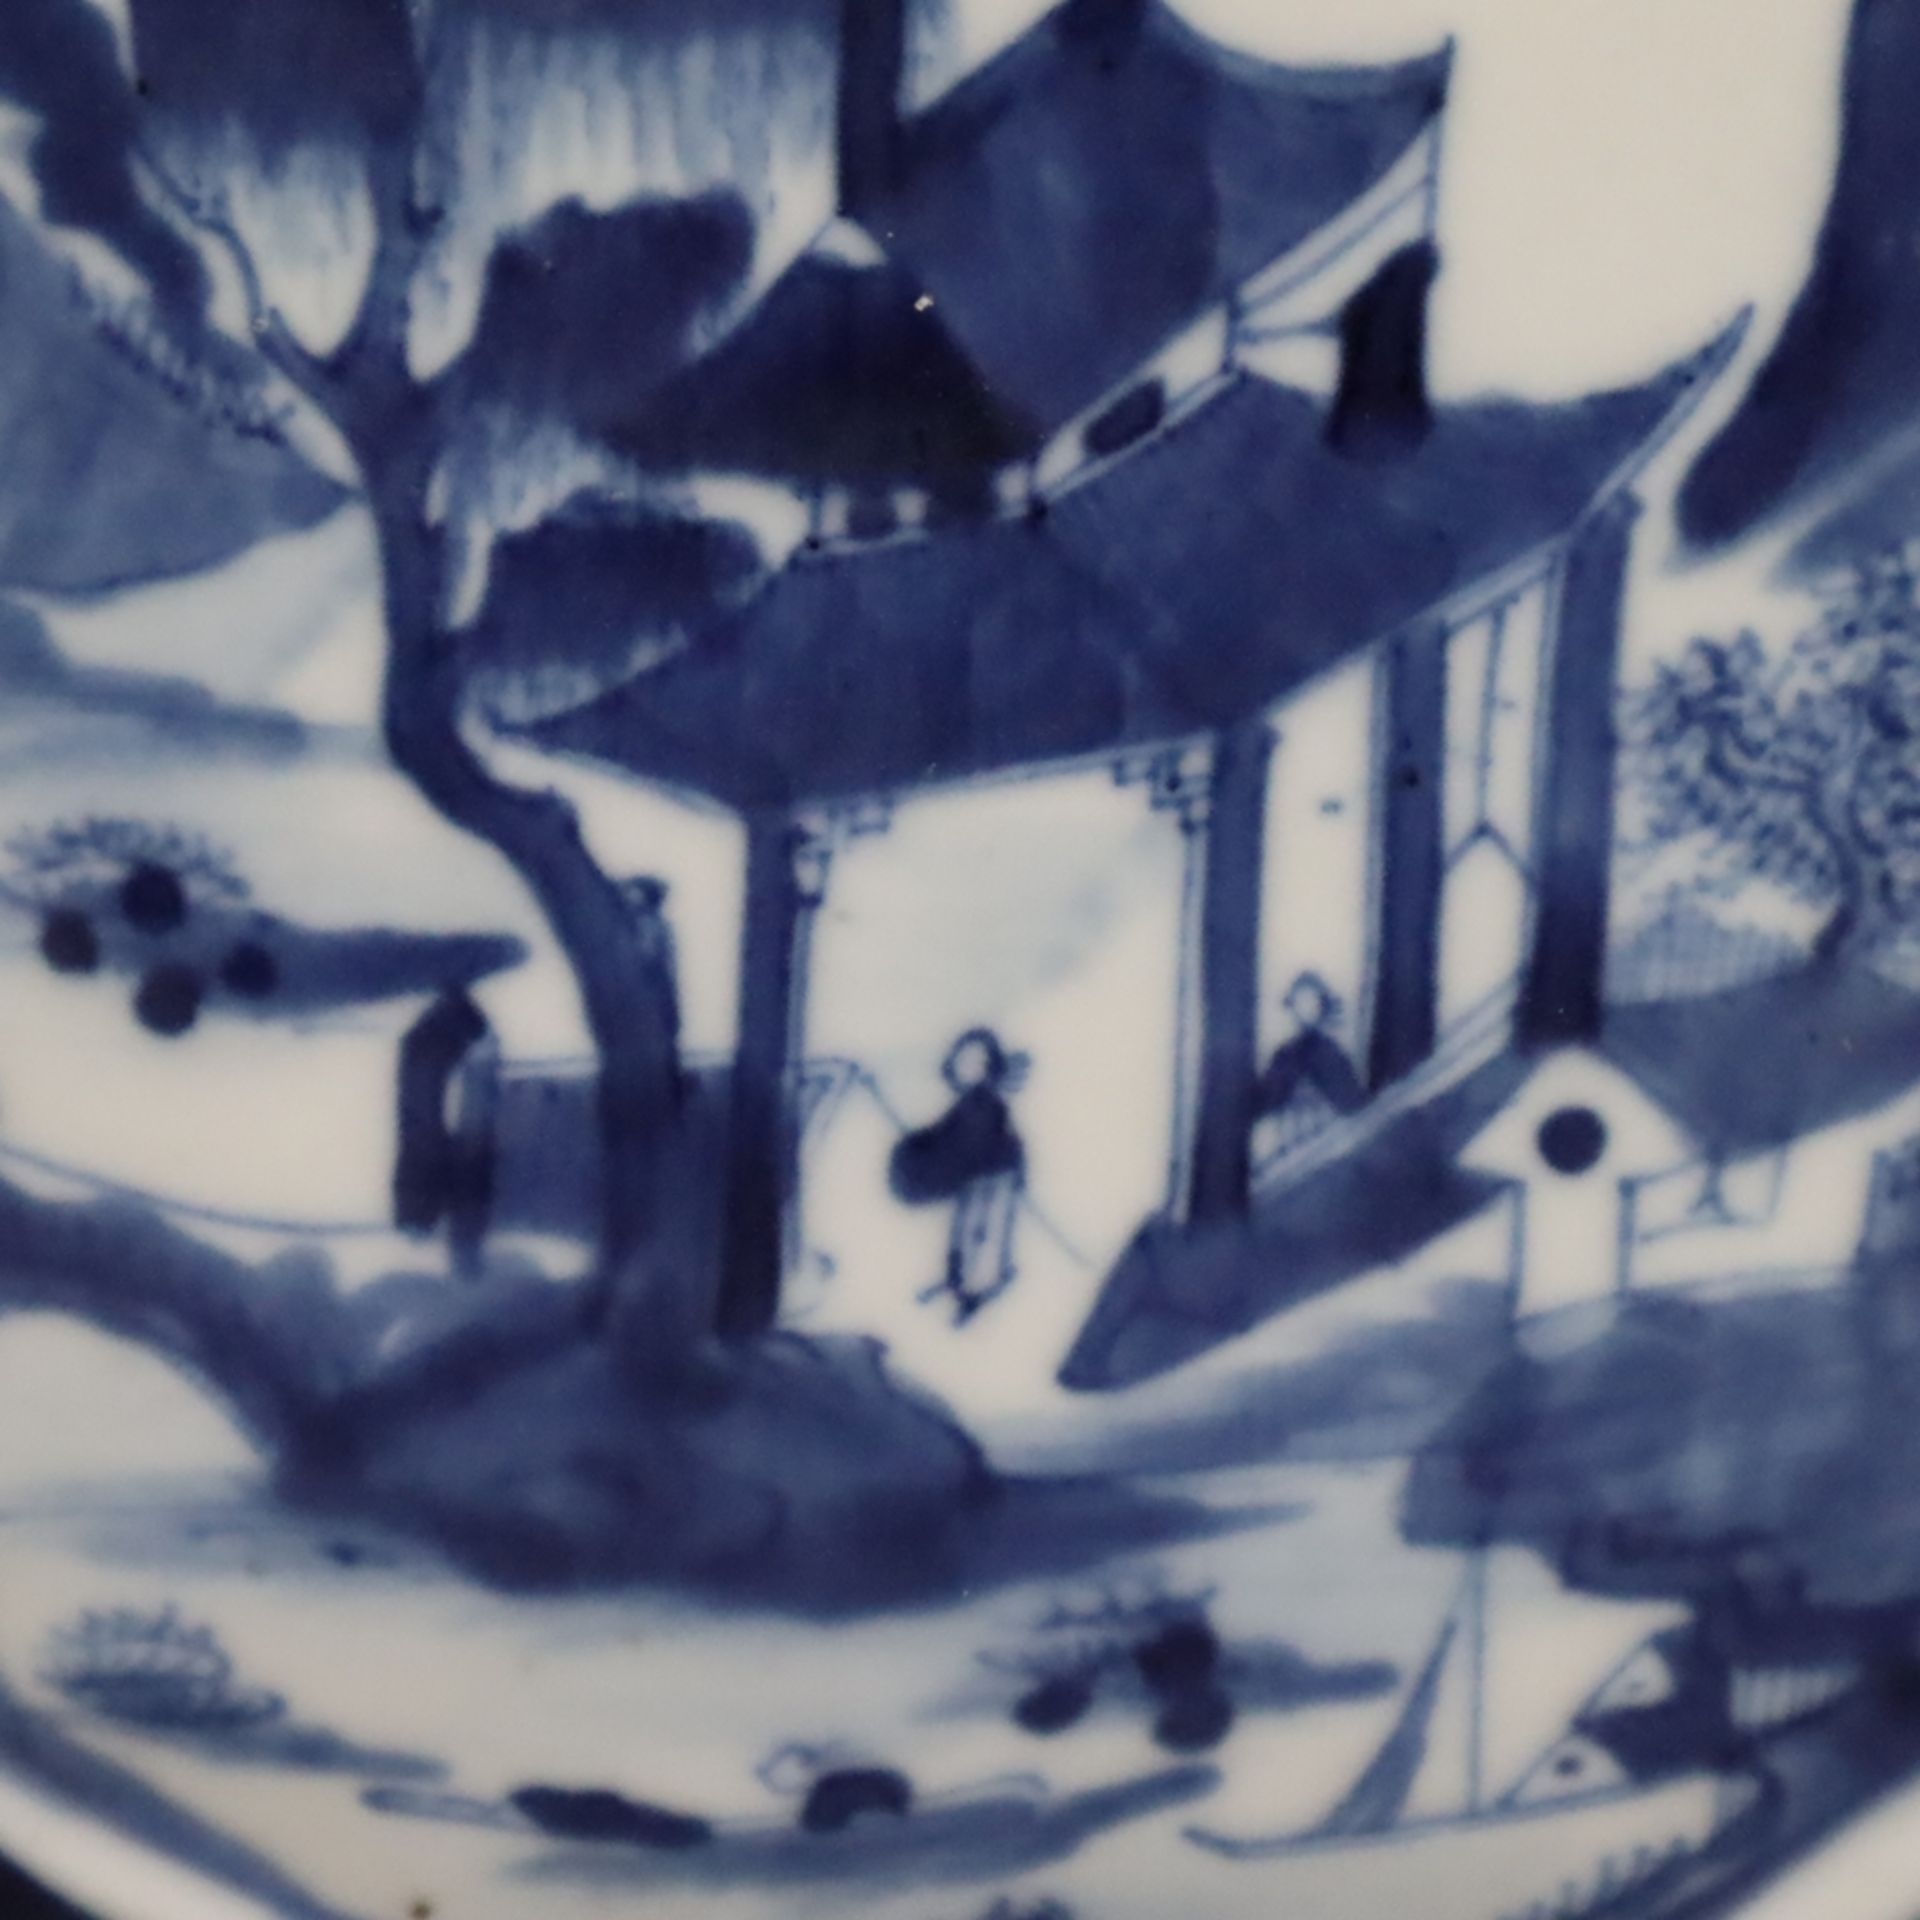 Mond-/Pilgerflasche - China, Ende 19.Jh., Porzellan mit Blaumalerei, Flaschenform mit Röhrenhals un - Image 4 of 11